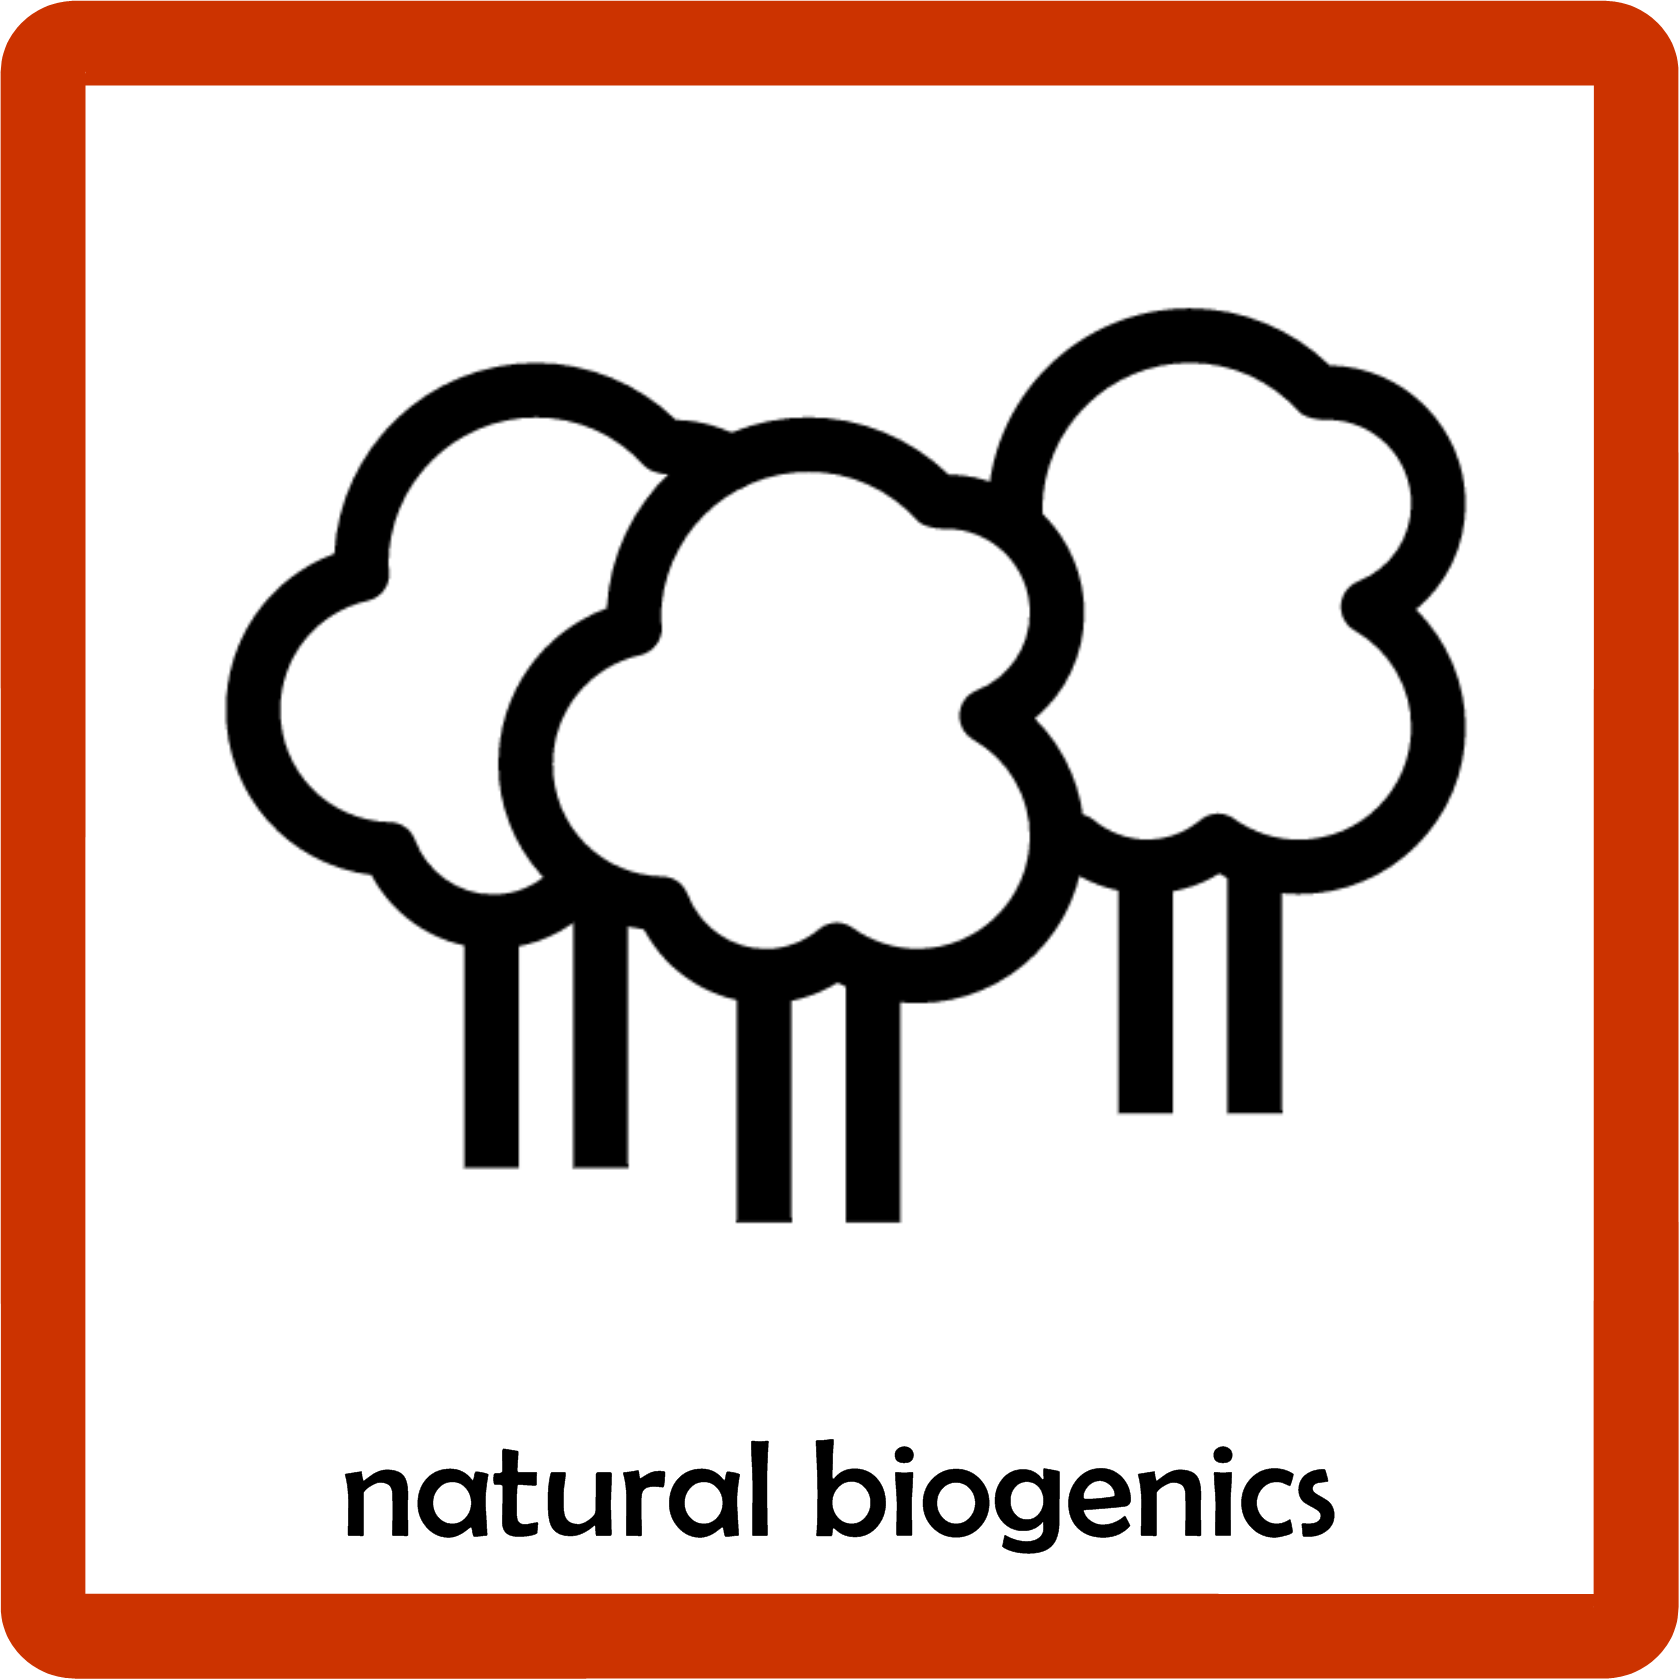 Biogenic Emissions